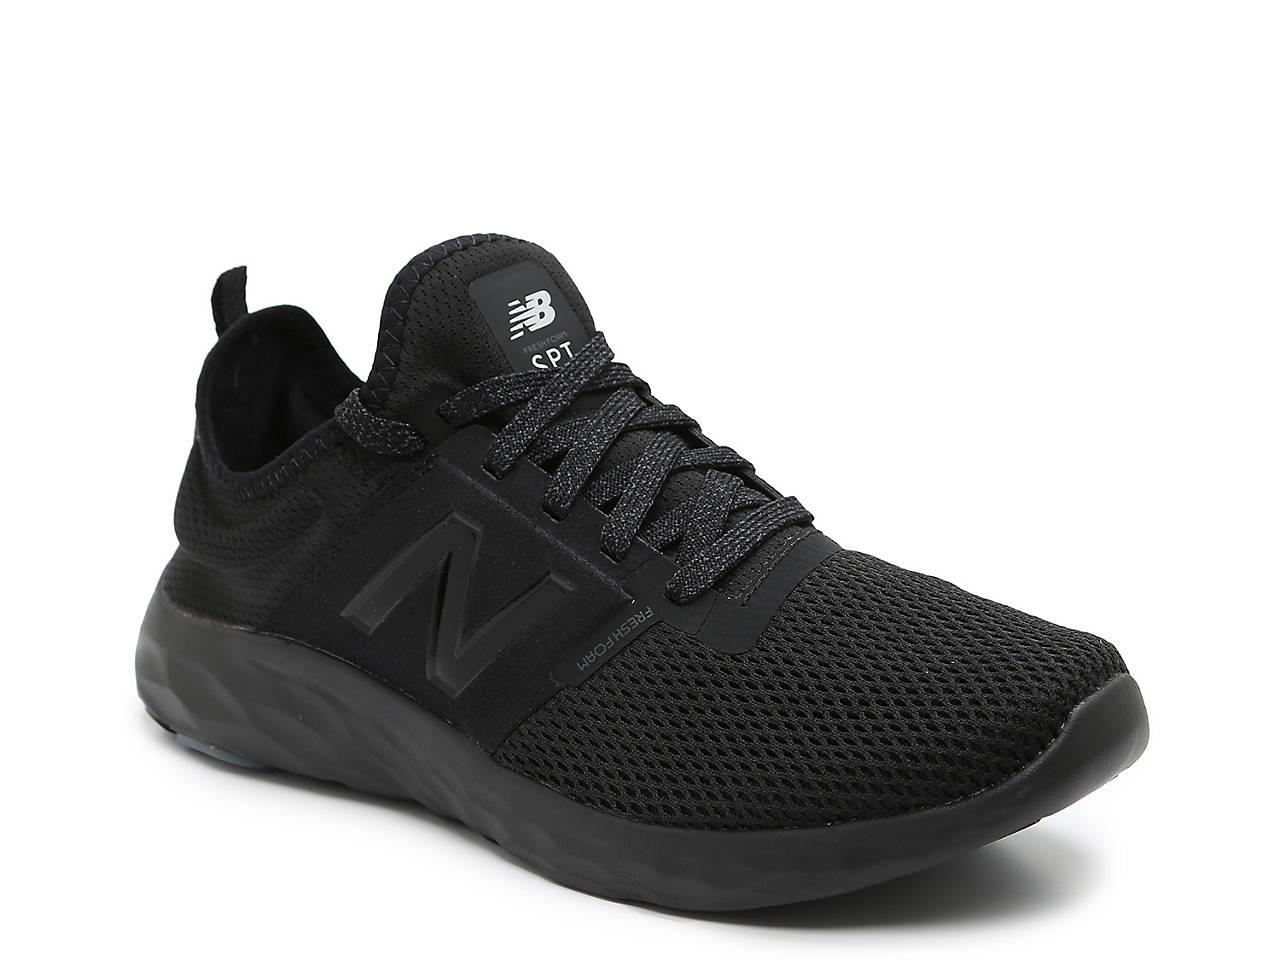 New Balance Synthetic Fresh Foam Spt Sneaker in Black for Men - Lyst